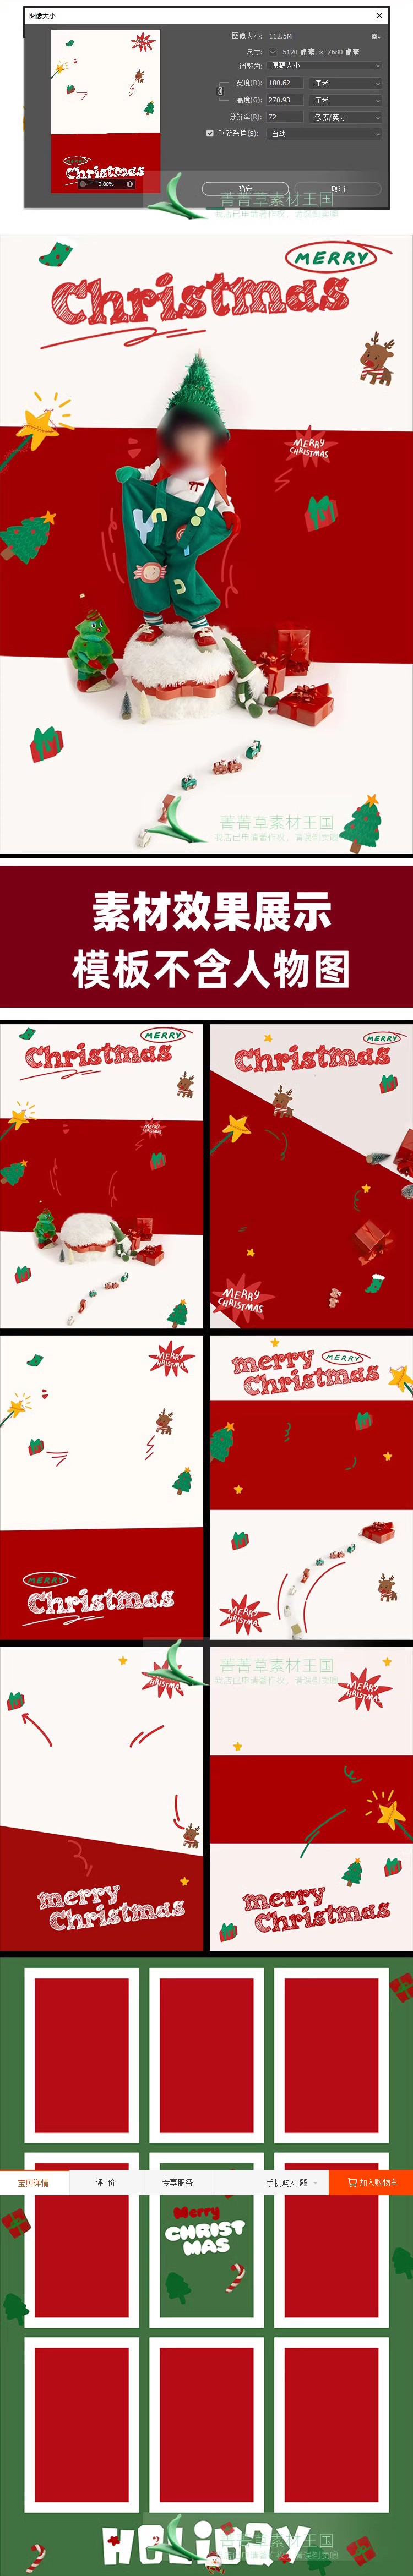 Psd-2283, Bộ 7 Psd Mẫu Chỉnh Sửa Hậu Kì Studio ảnh Trẻ Em Vẽ Tay Hoạt Hình Dễ Thương ảnh Giáng Sinh Noel (2)